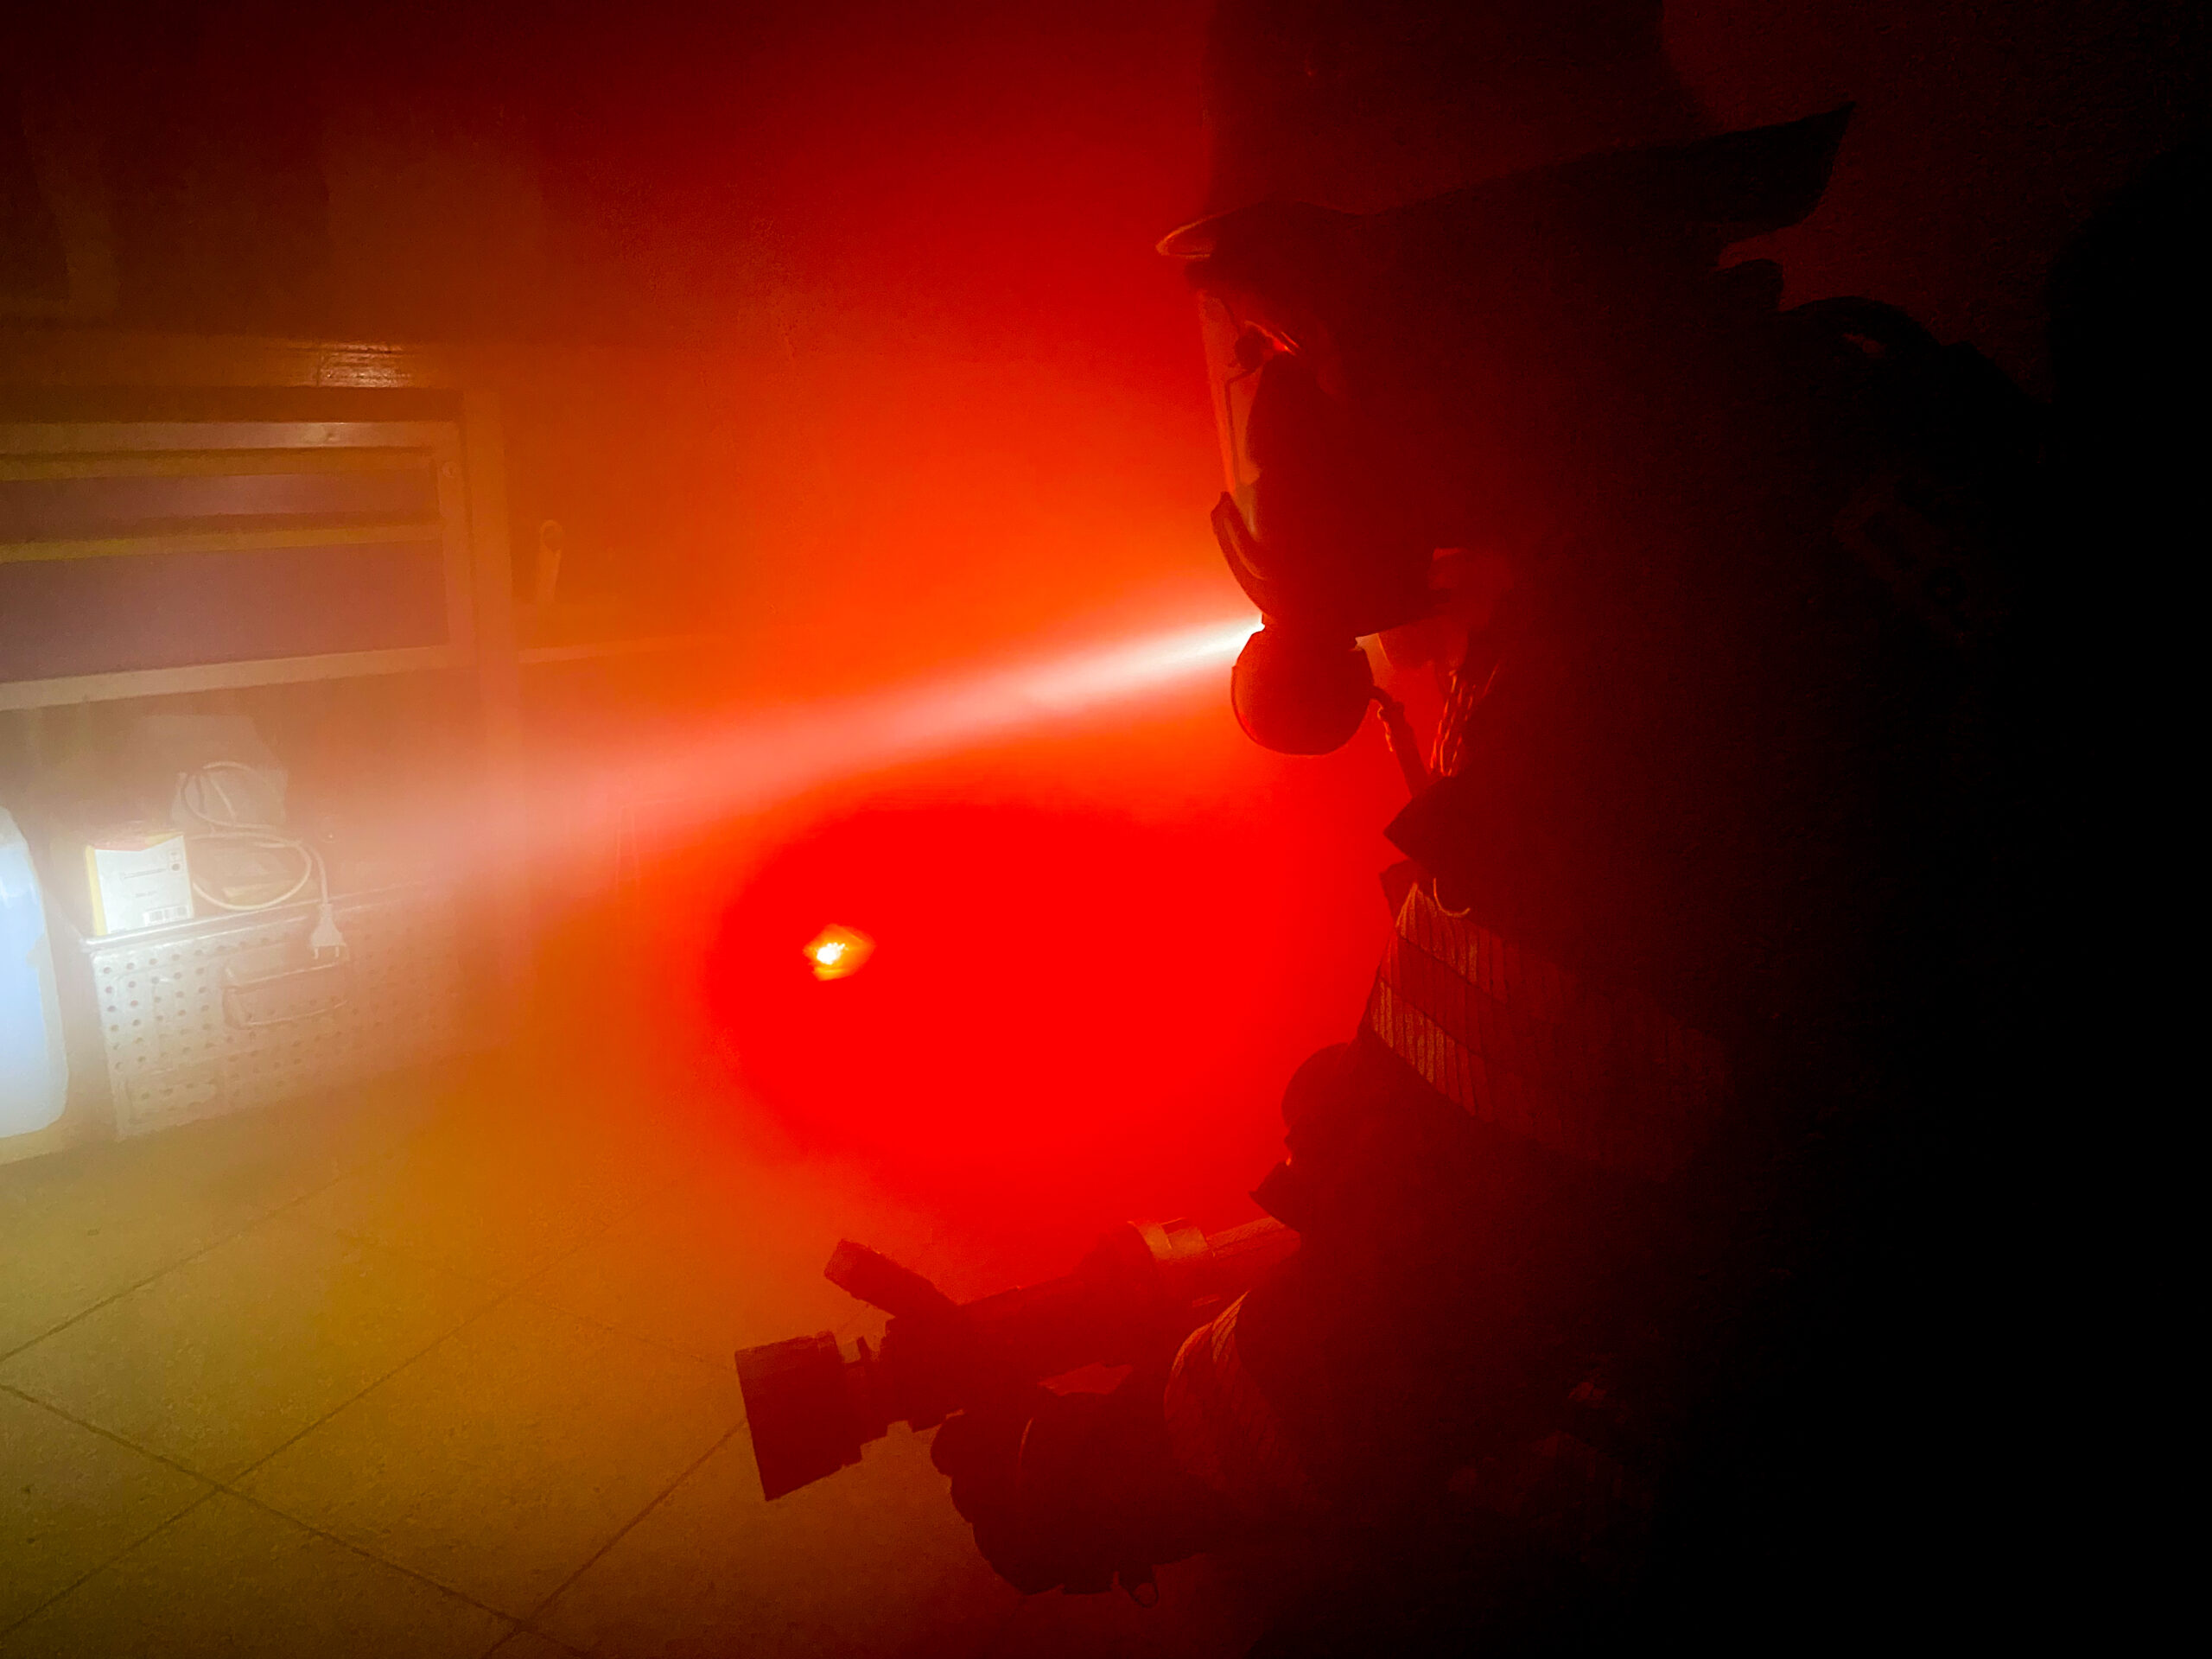 Feuerwehrmann unter schwerem Atemschutz bei einer Übung